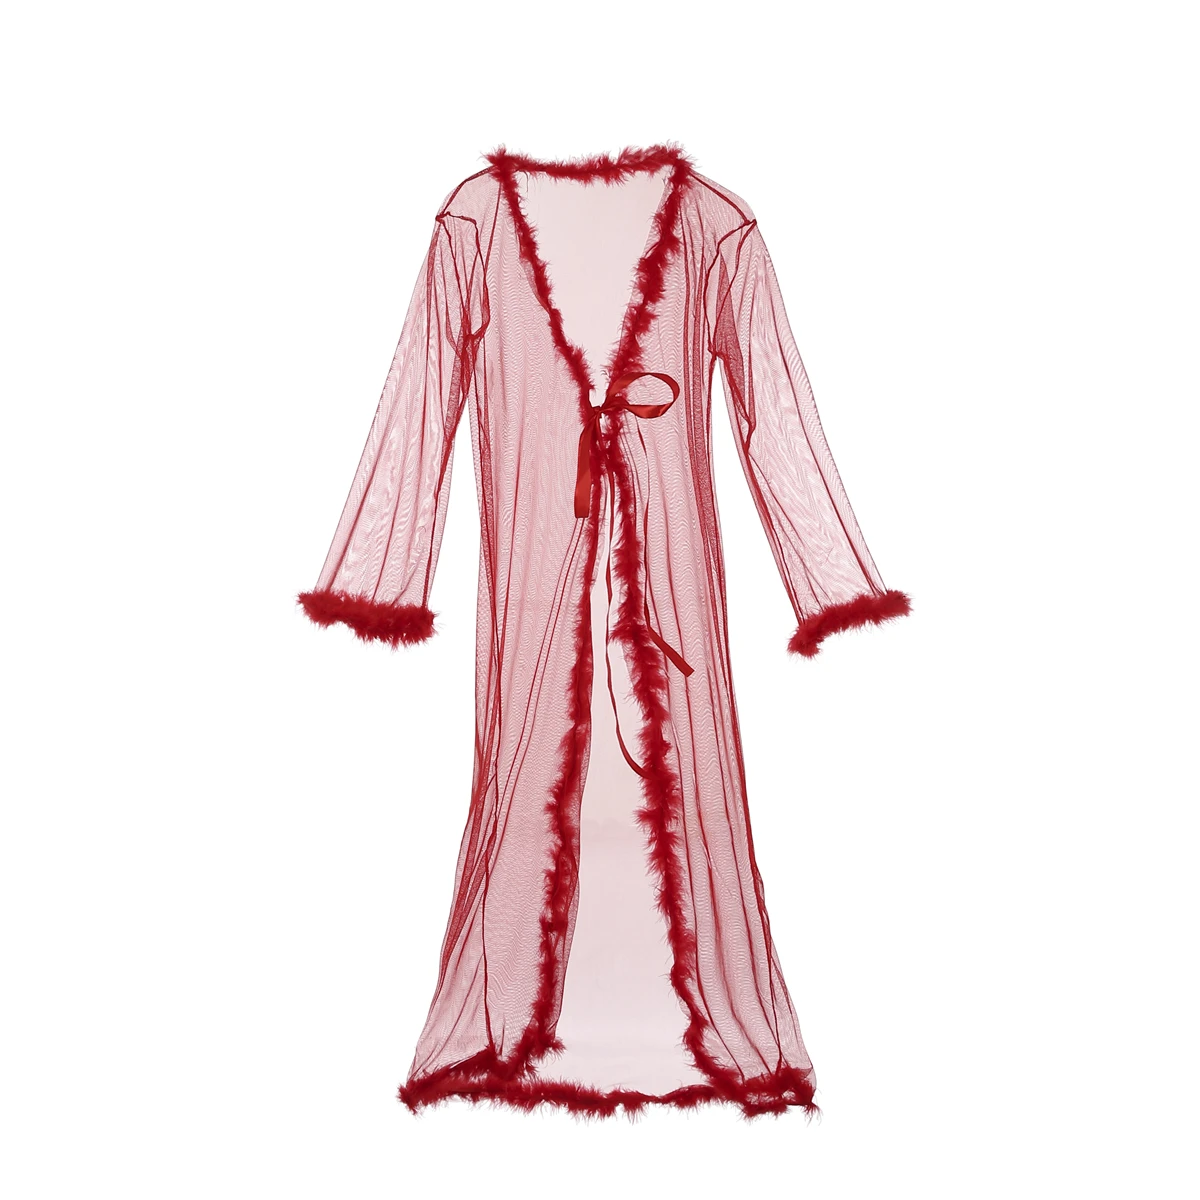 Сексуальный женский кружевной прозрачный длинный халат, ночная рубашка, халат, пижама, ночная рубашка, одежда для сна